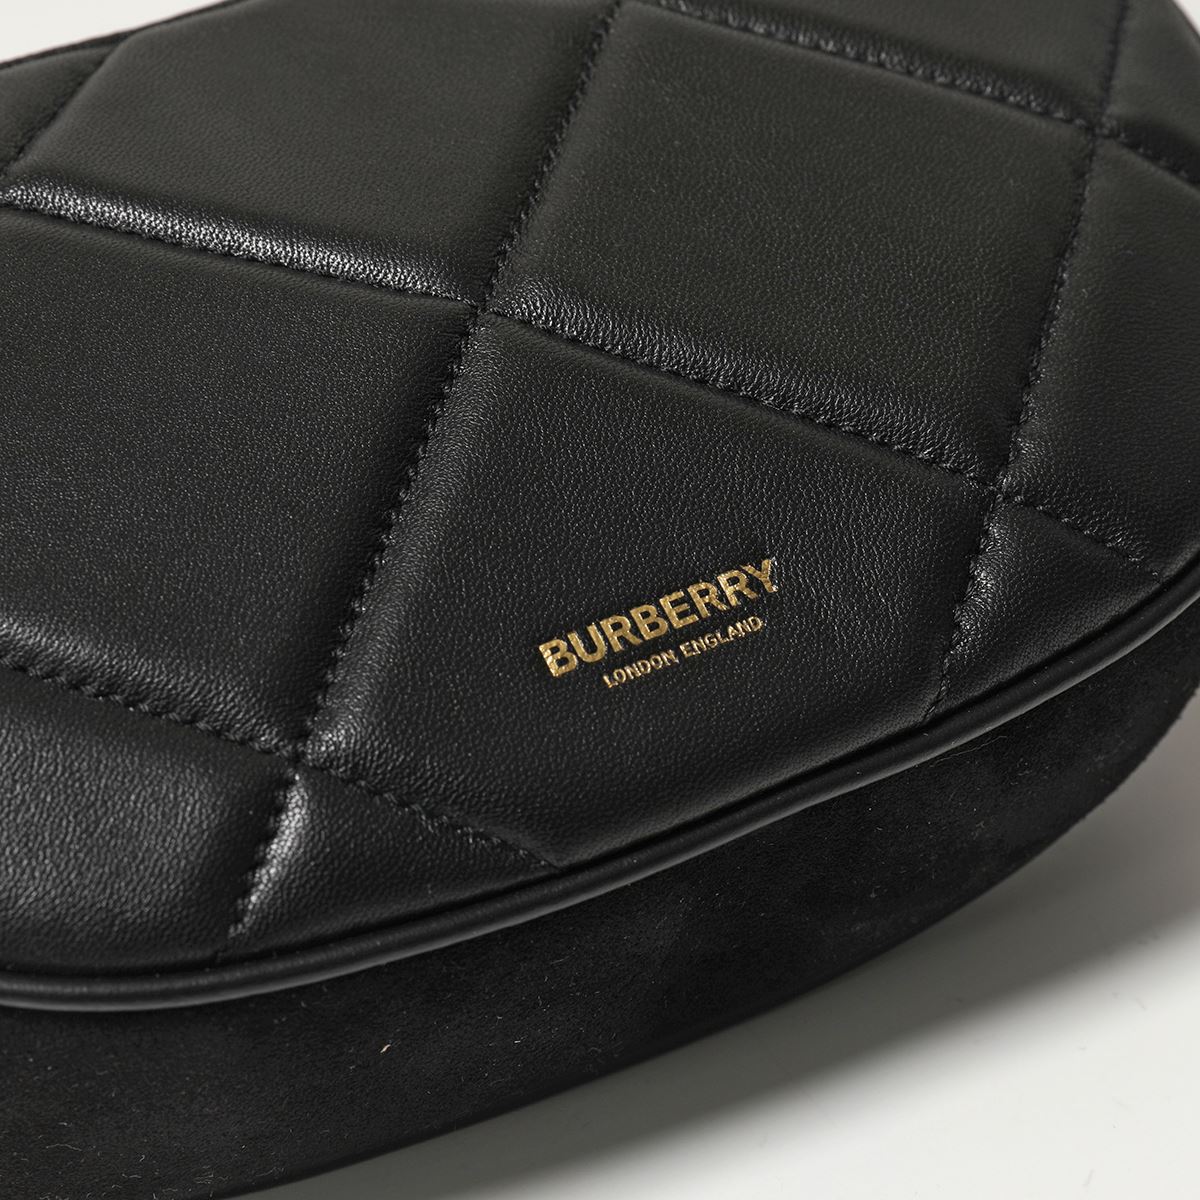 BURBERRY バーバリー 8036744 キルティング ラムスキン オリンピアポーチ ポシェット ハンドバッグ ショルダーバッグ ロゴ レザー  A1189/BLACK 鞄 レディース | インポートセレクト musee